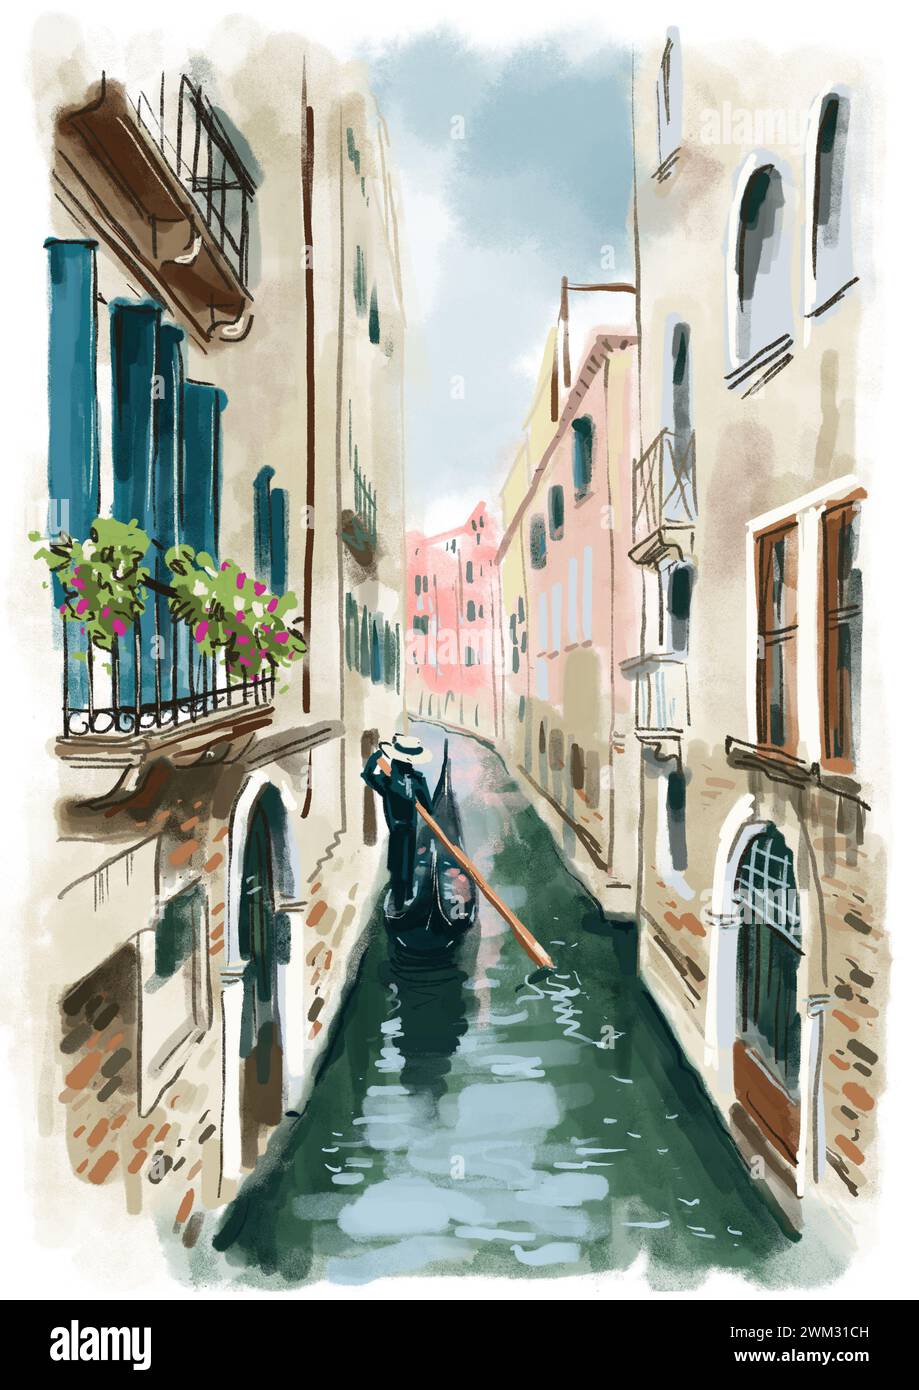 Belle rue à Venise. Сanal gondole et gondolier avec rame. Peinture aquarelle. Illustration numérique aquarelle Banque D'Images